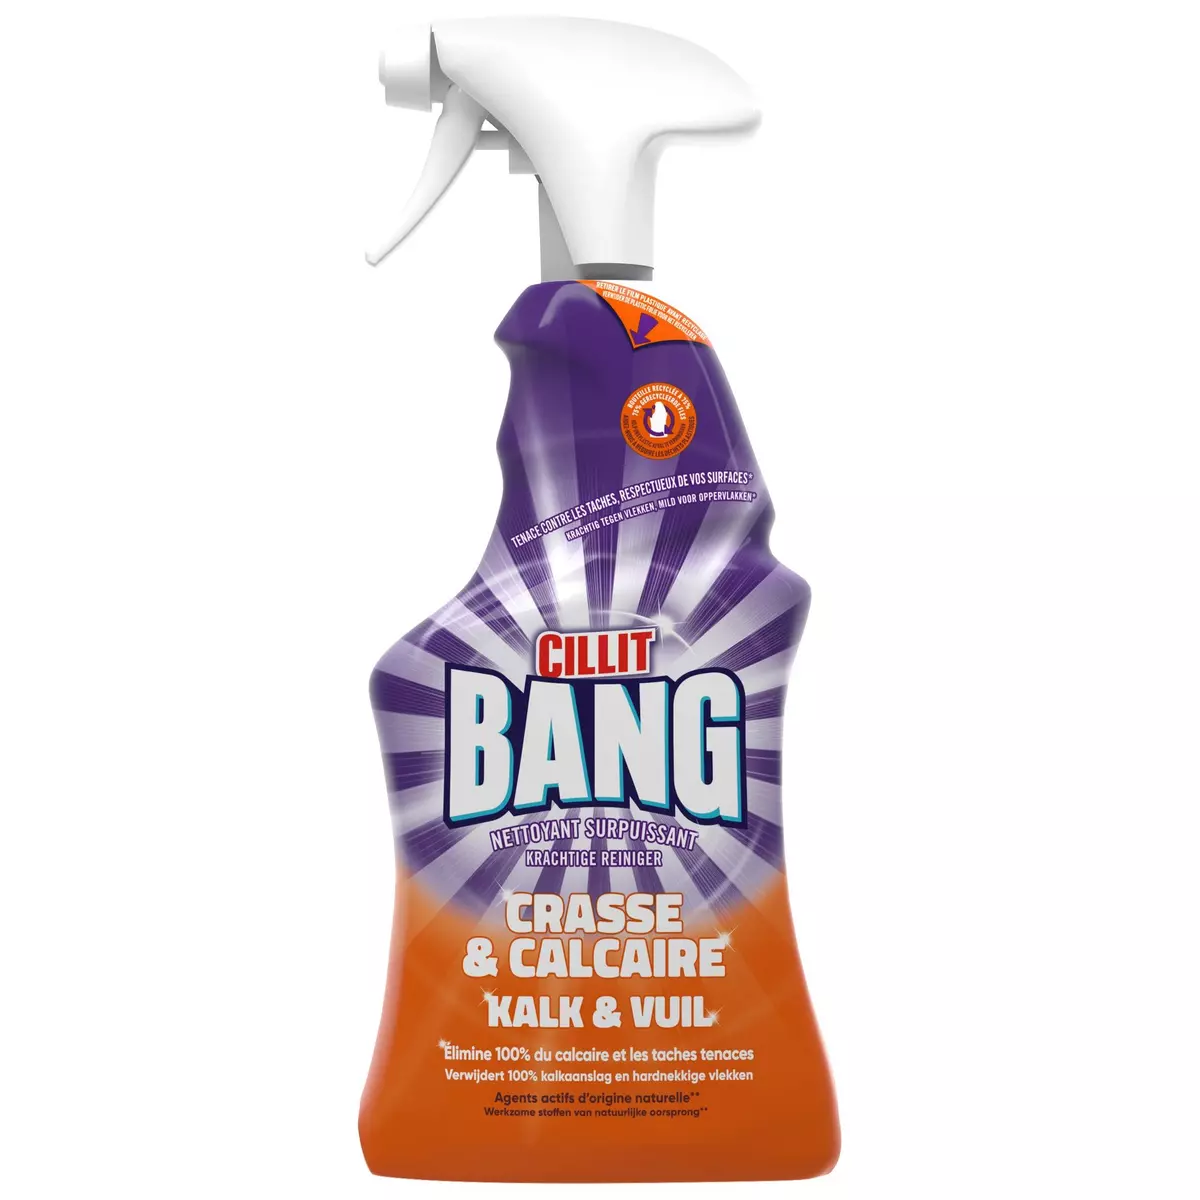 CILLIT BANG Spray nettoyant surpuissant&nbsp;crasse & calcaire 750ml